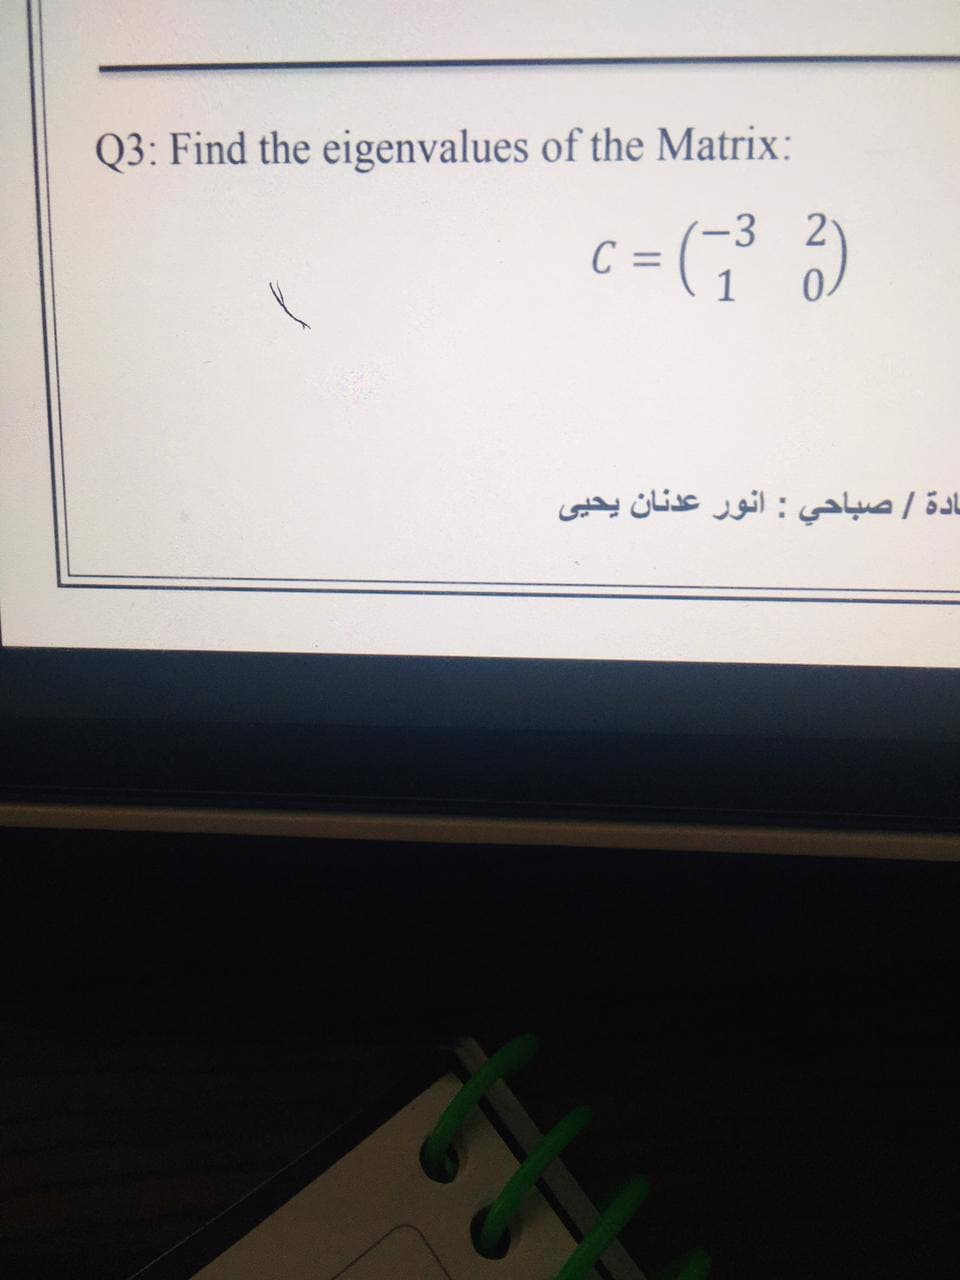 Q3: Find the eigenvalues of the Matrix:
3 2
1
ادة / صباحي : انور عدنان یحيی
